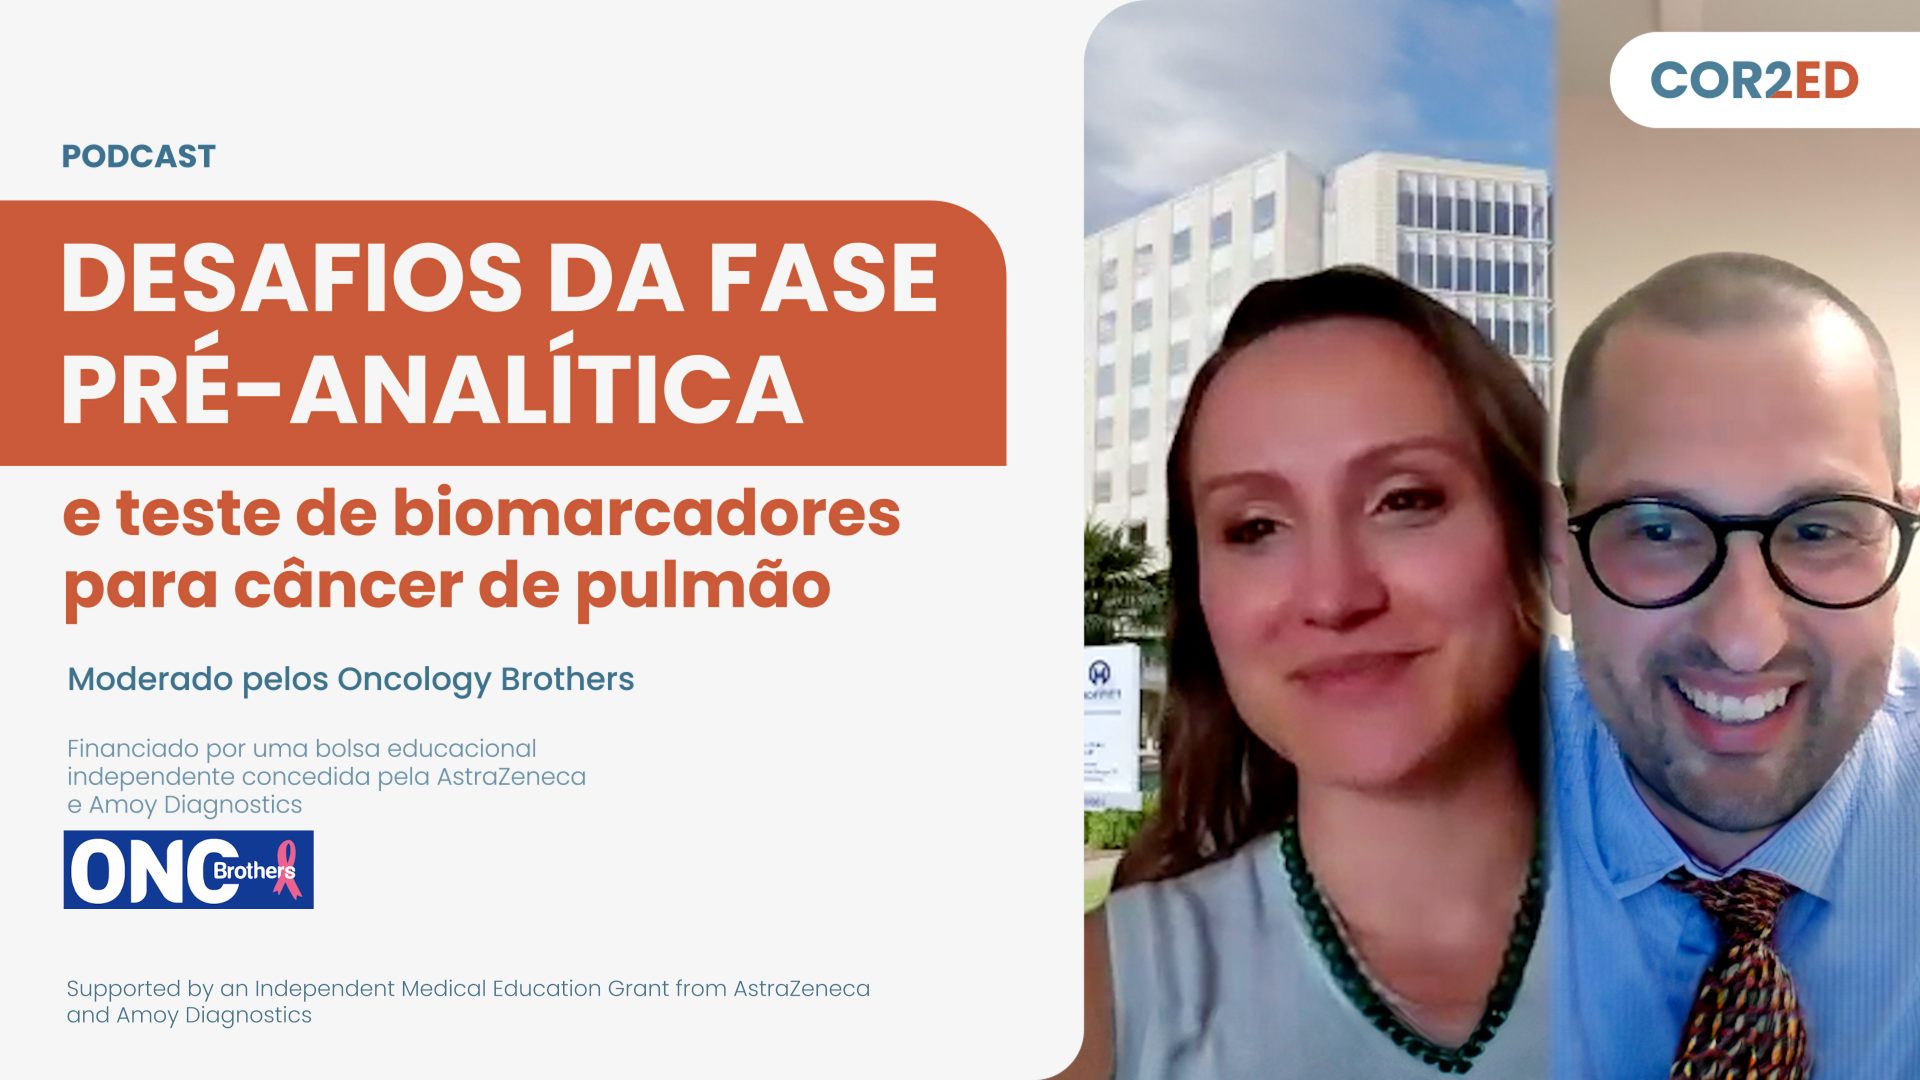 Câncer de Pulmão: Desafios da fase pré-analítica e teste de biomarcadores (Portuguese)